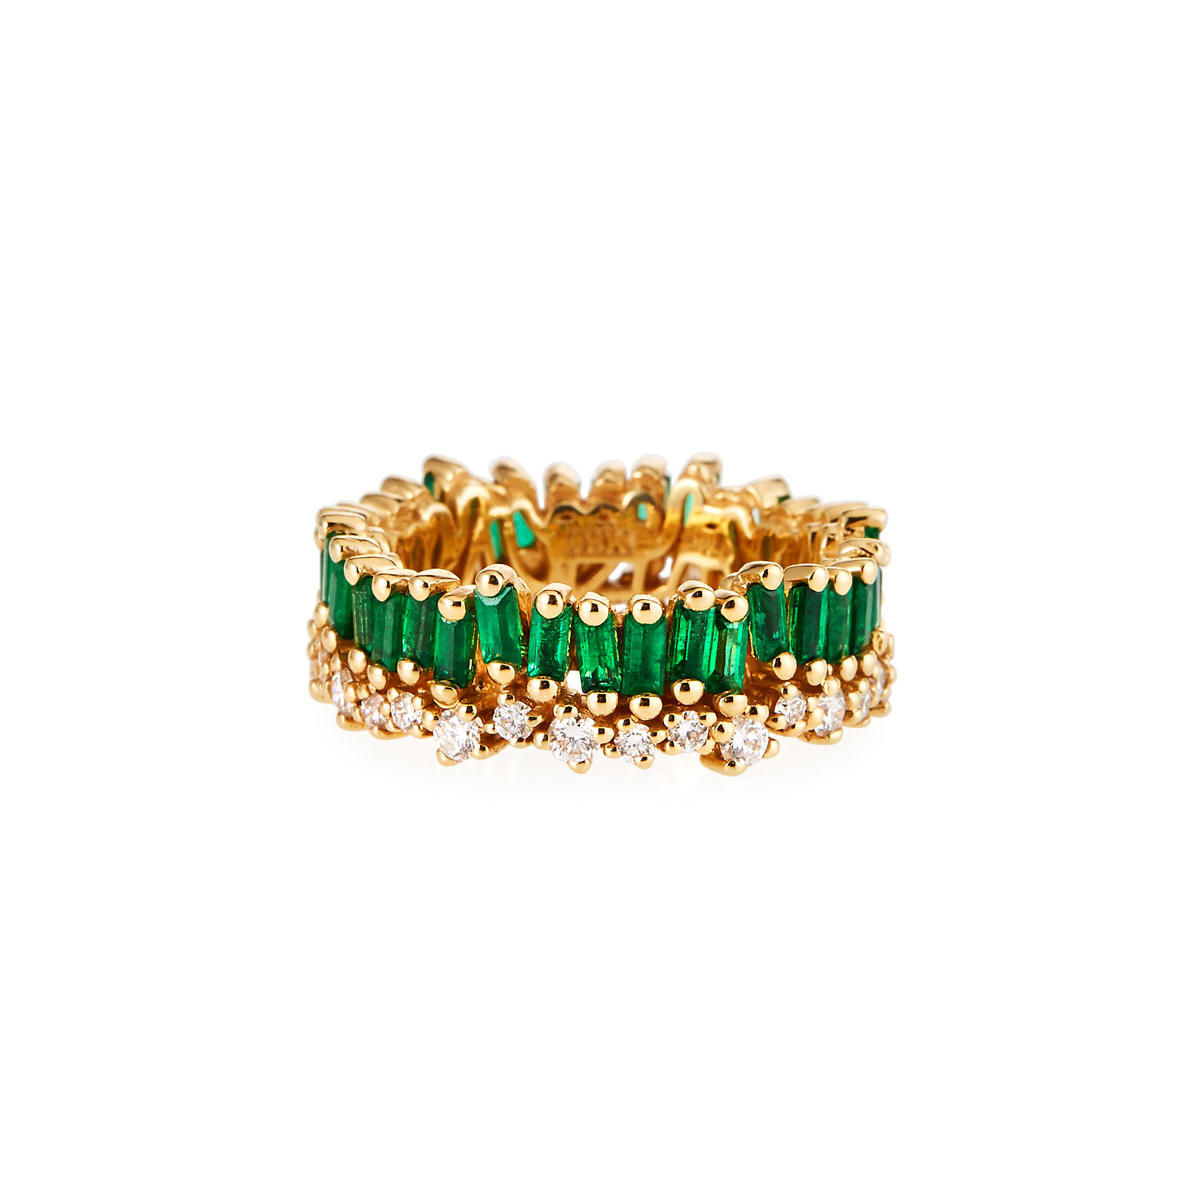 Venda al por mayor la joyería esmeralda del anillo OEM/ODM del oro amarillo de la aduana 18k o el anillo de la CZ del OEM